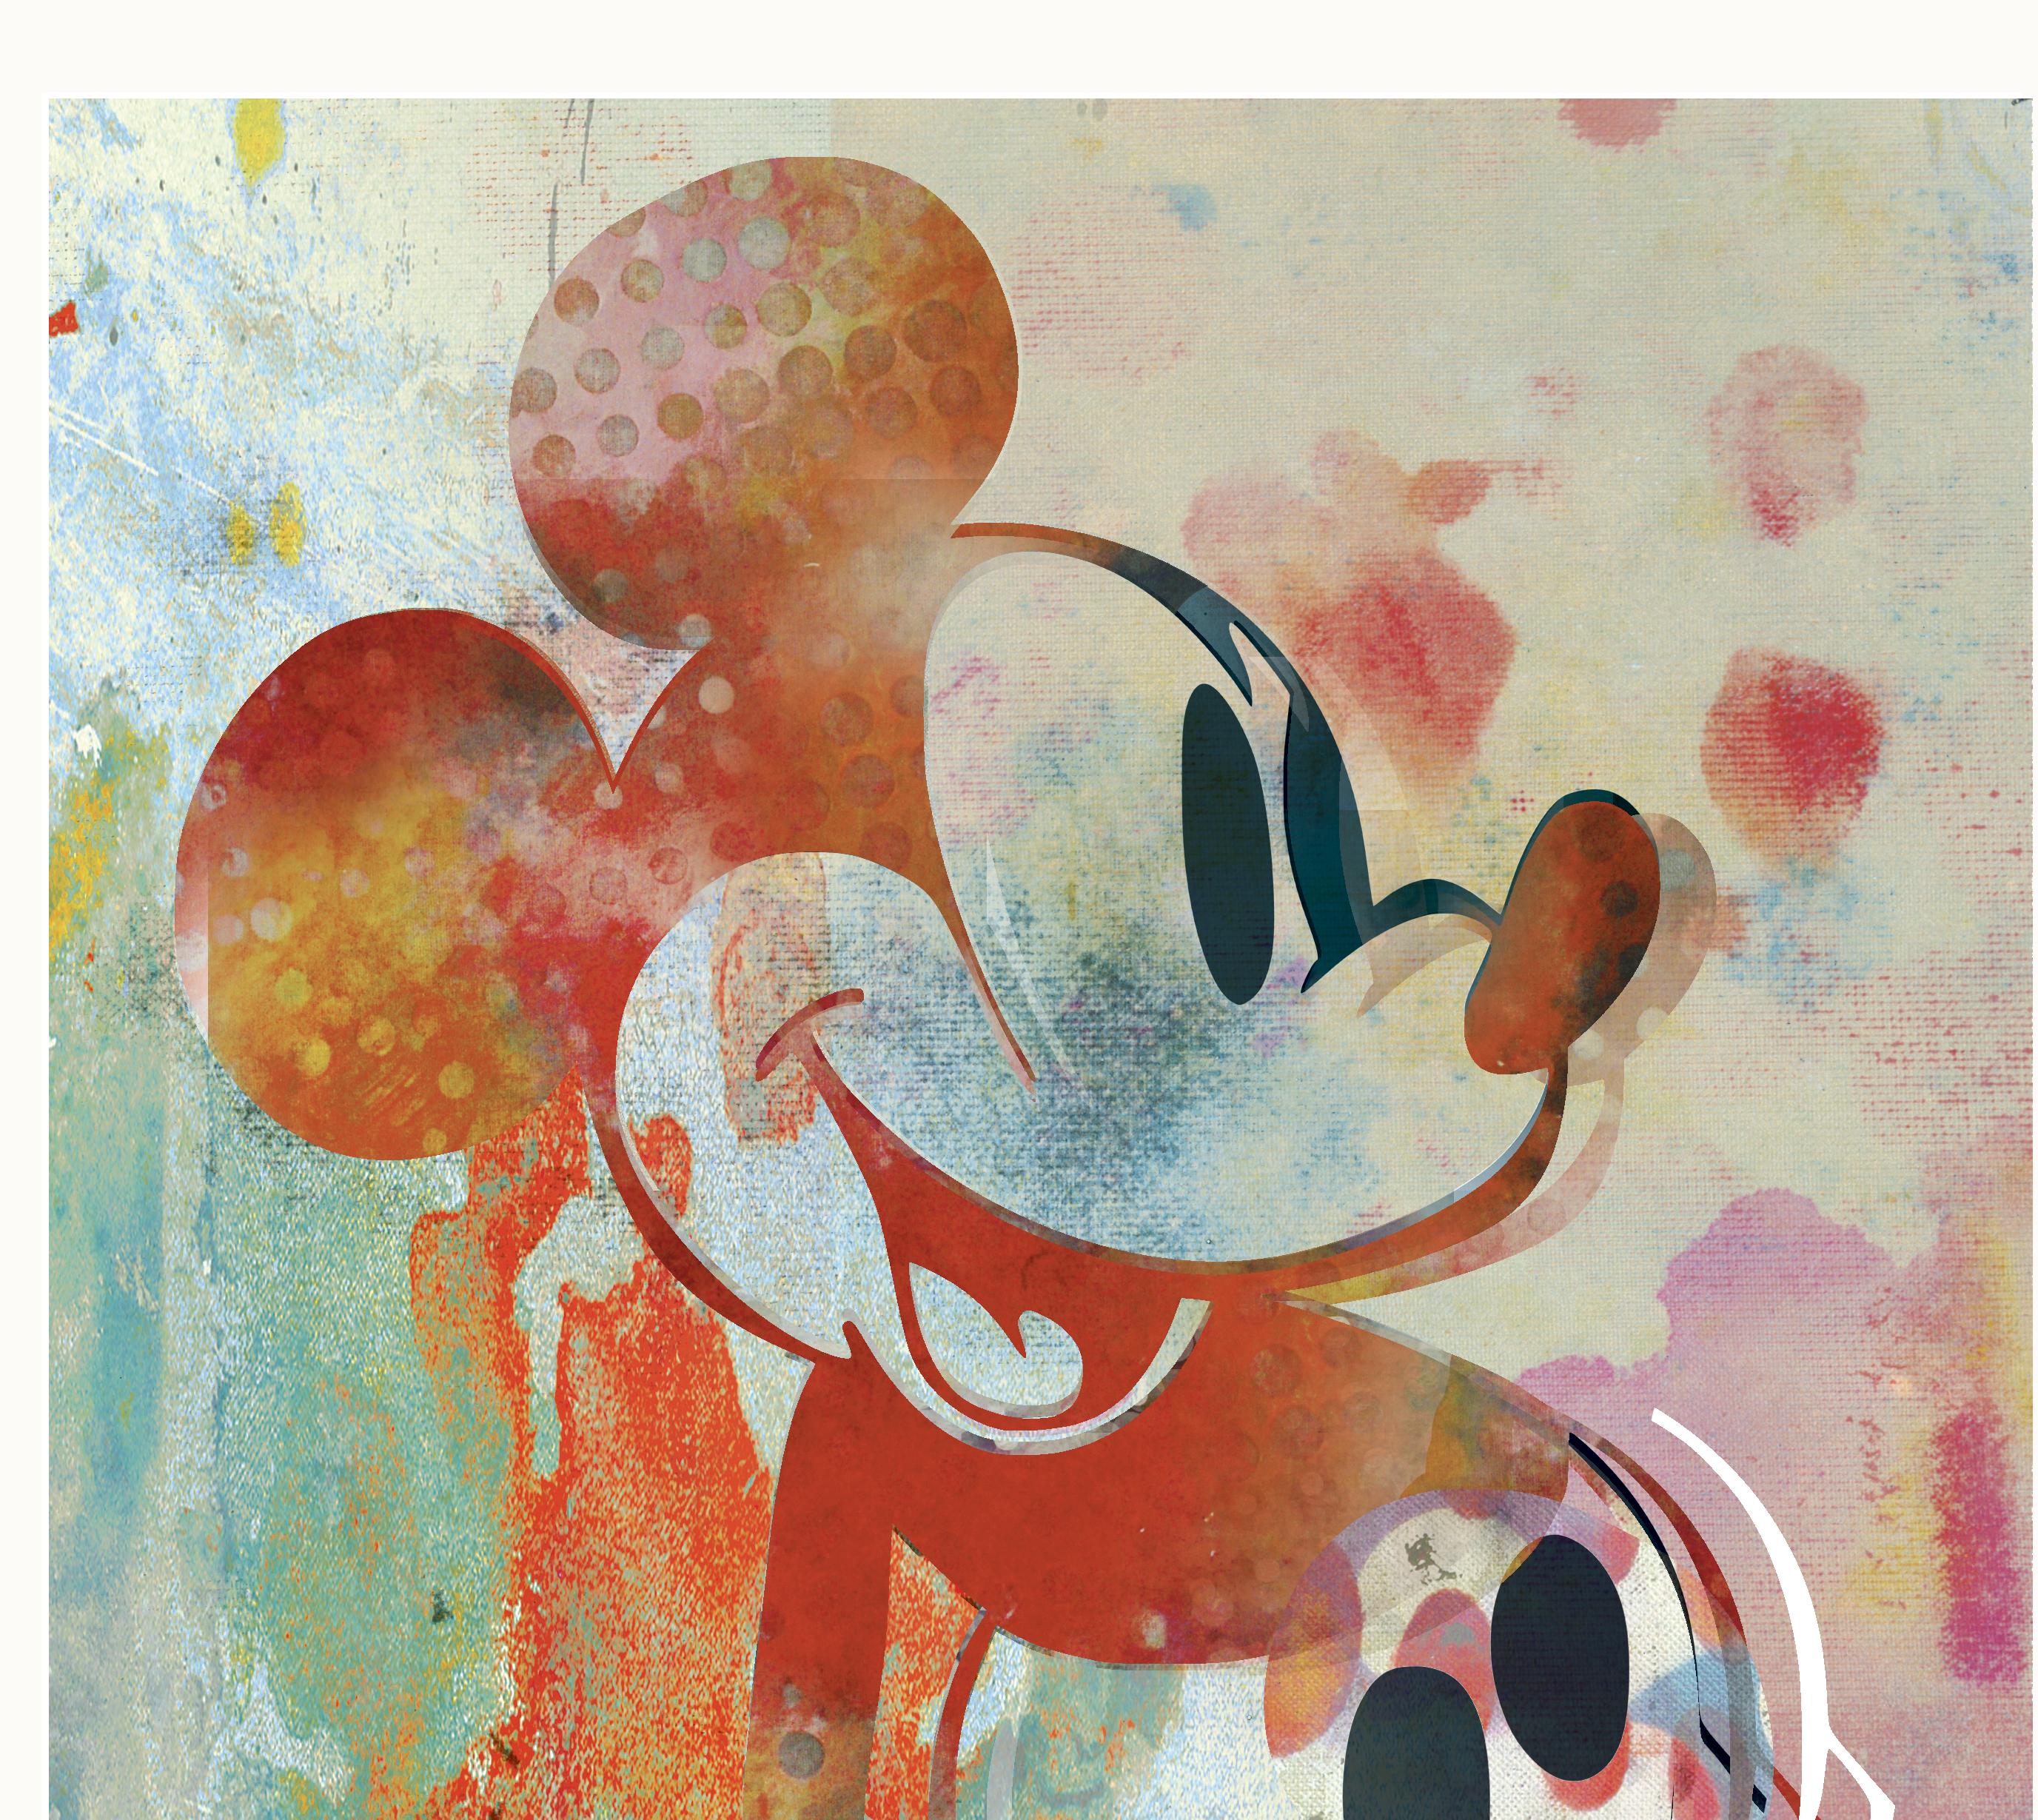 M017-Figuratif, Street art, Pop art, Moderne, Contemporain, abstrait Mickey Mous - Print de Francisco Nicolás